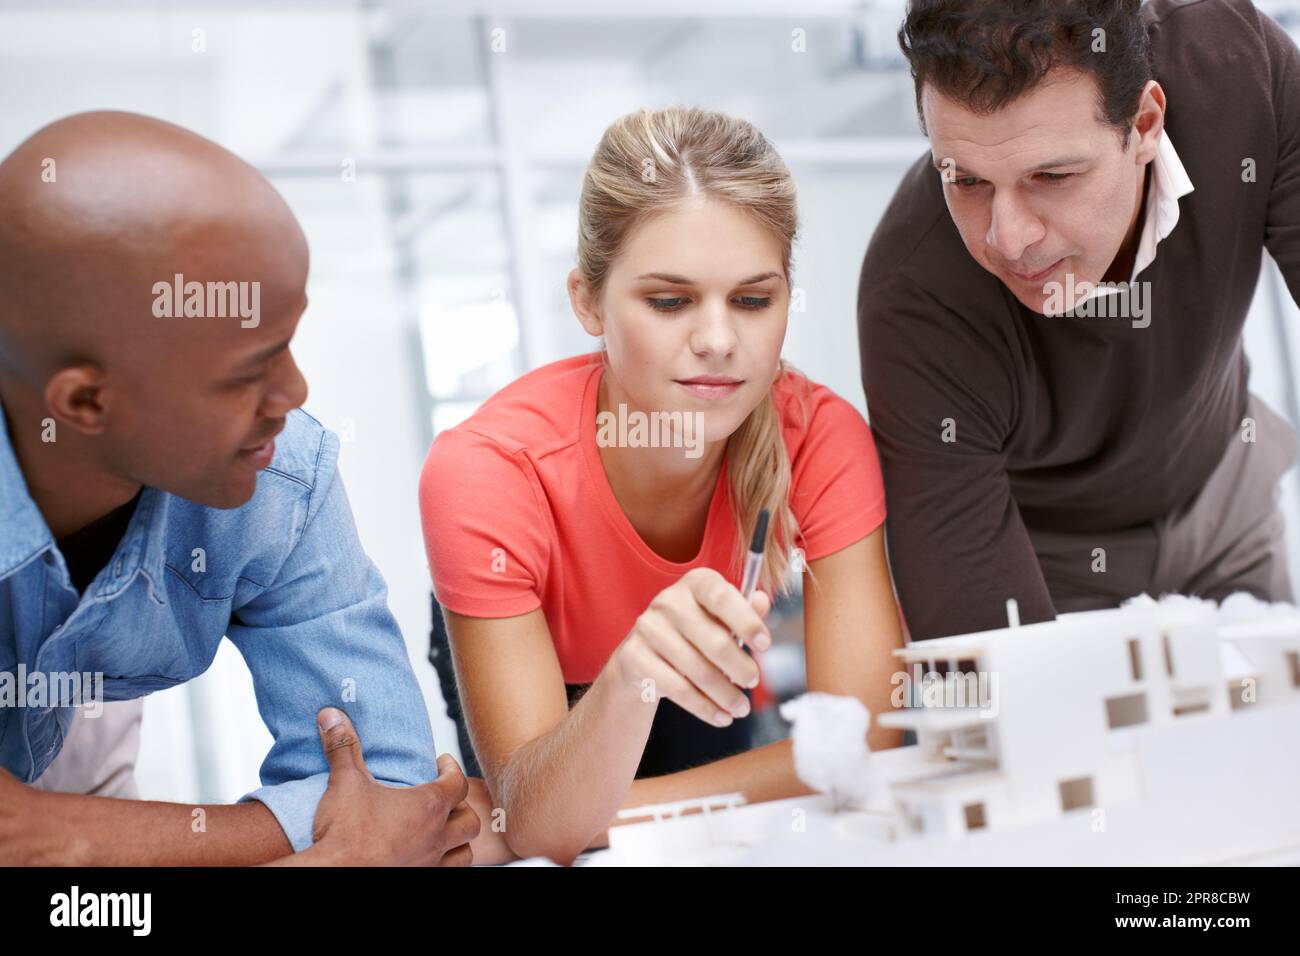 Wir brauchen etwas Inspiration Ein Team von Architekten, die gemeinsam an einem Architekturmodell arbeiten. Stockfoto